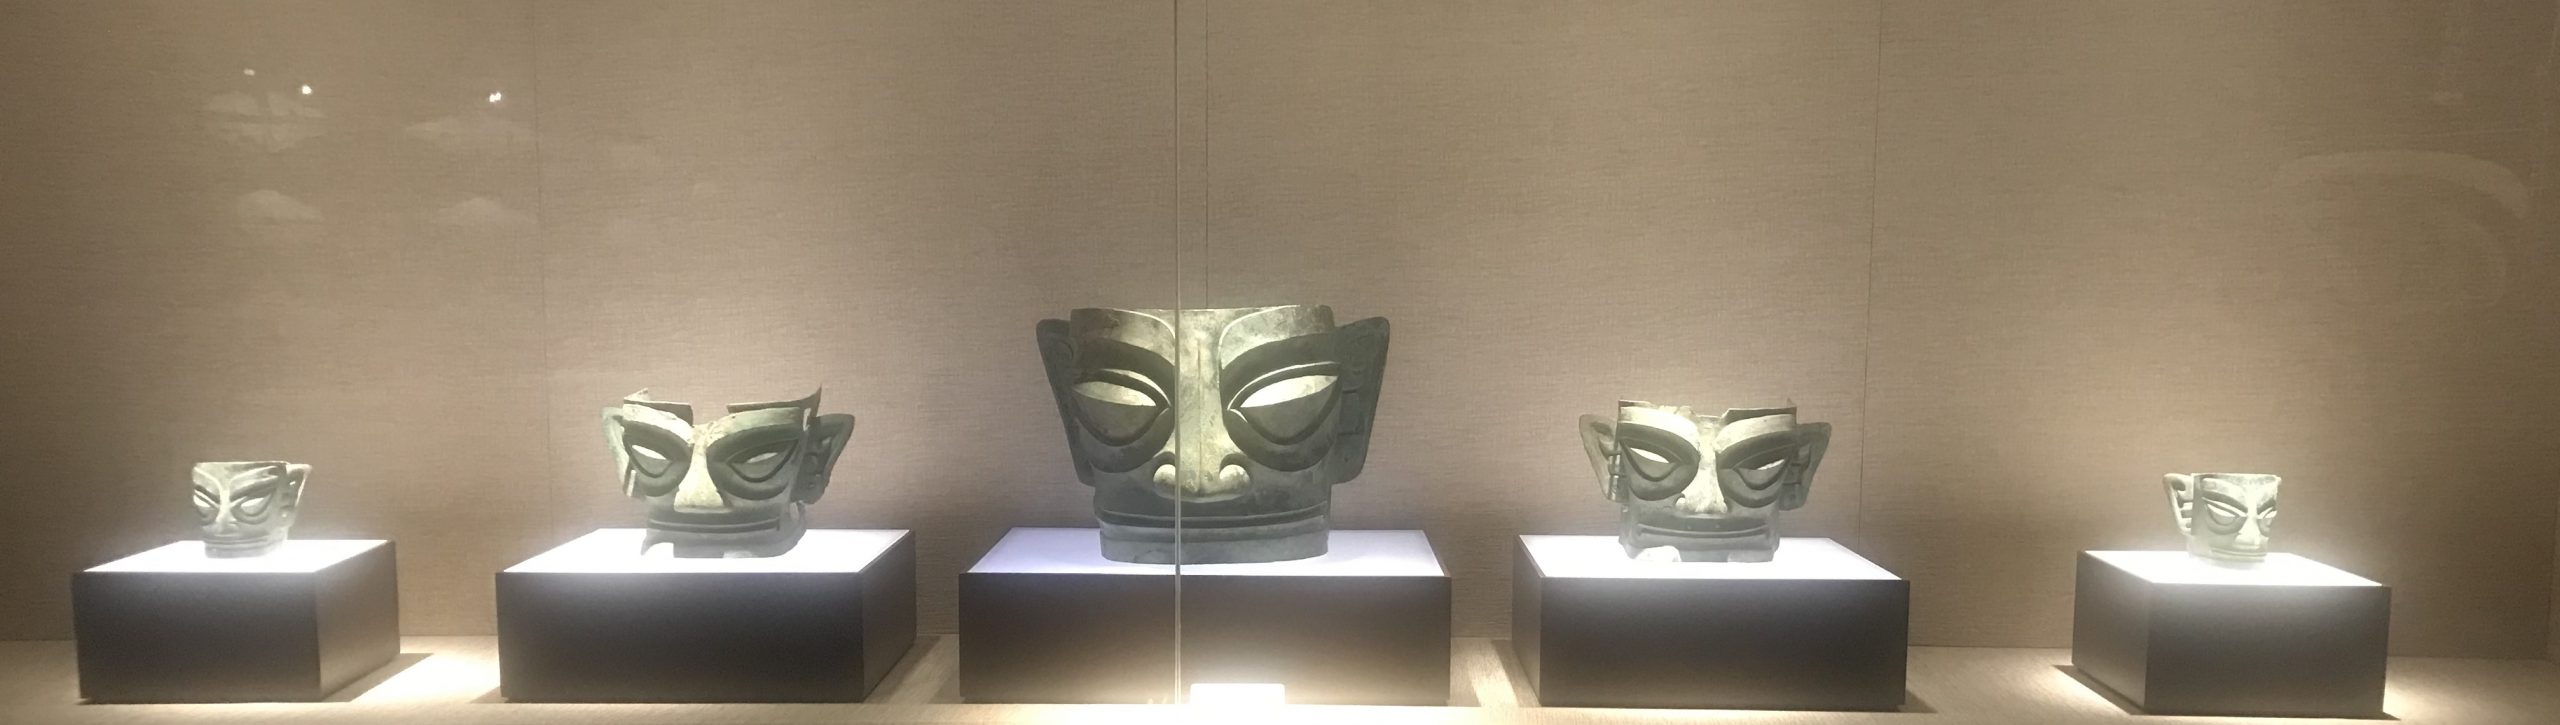 青銅人面具１-青銅器館-三星堆博物館-広漢市-徳陽市-四川省